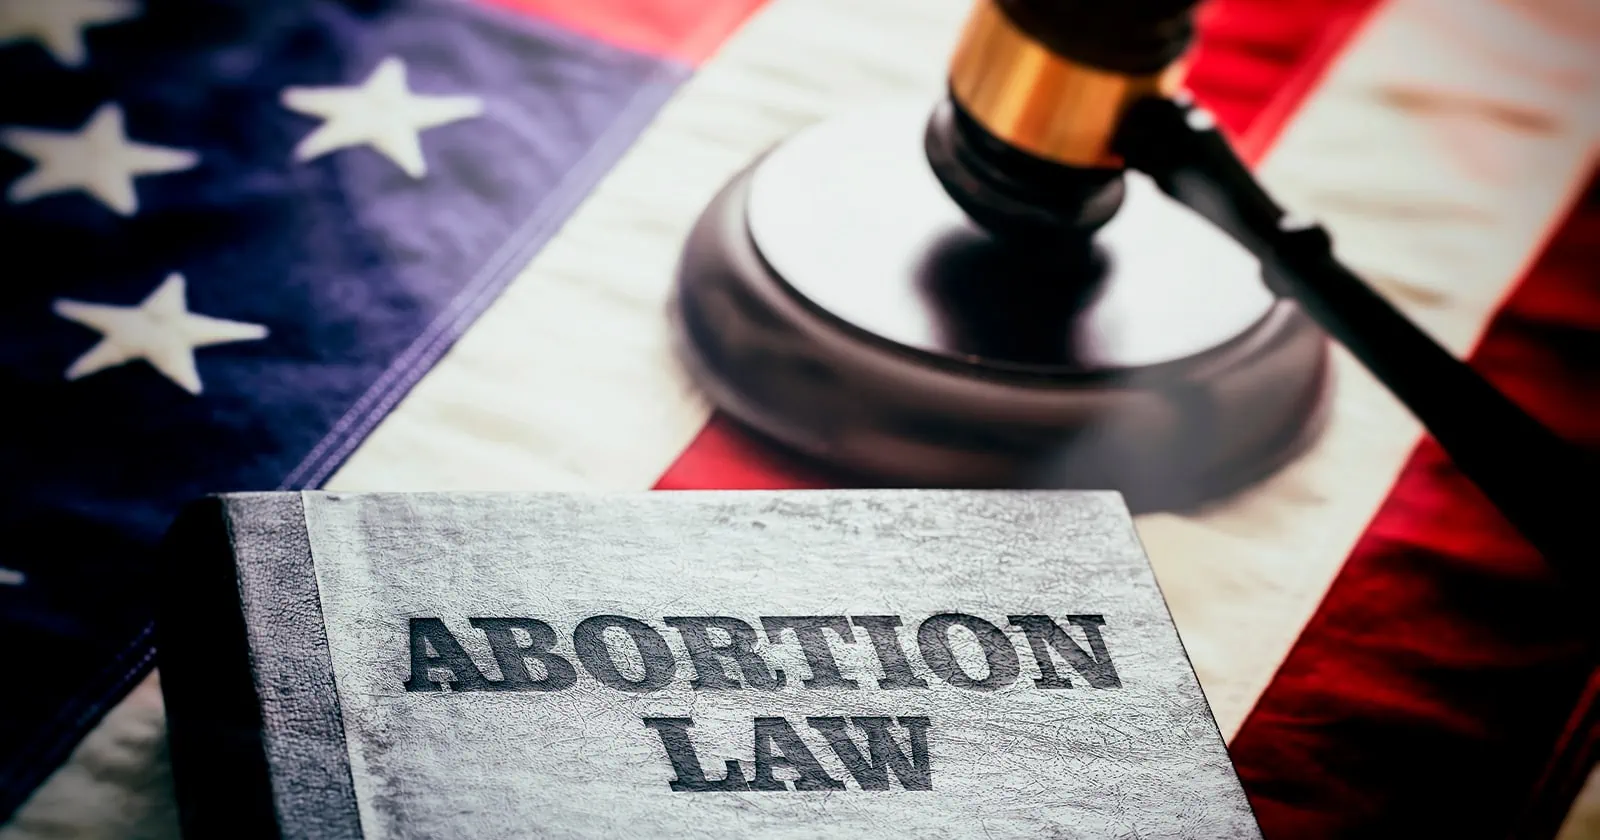 Anuncian Posible Enmienda a Ley de Aborto en Florida